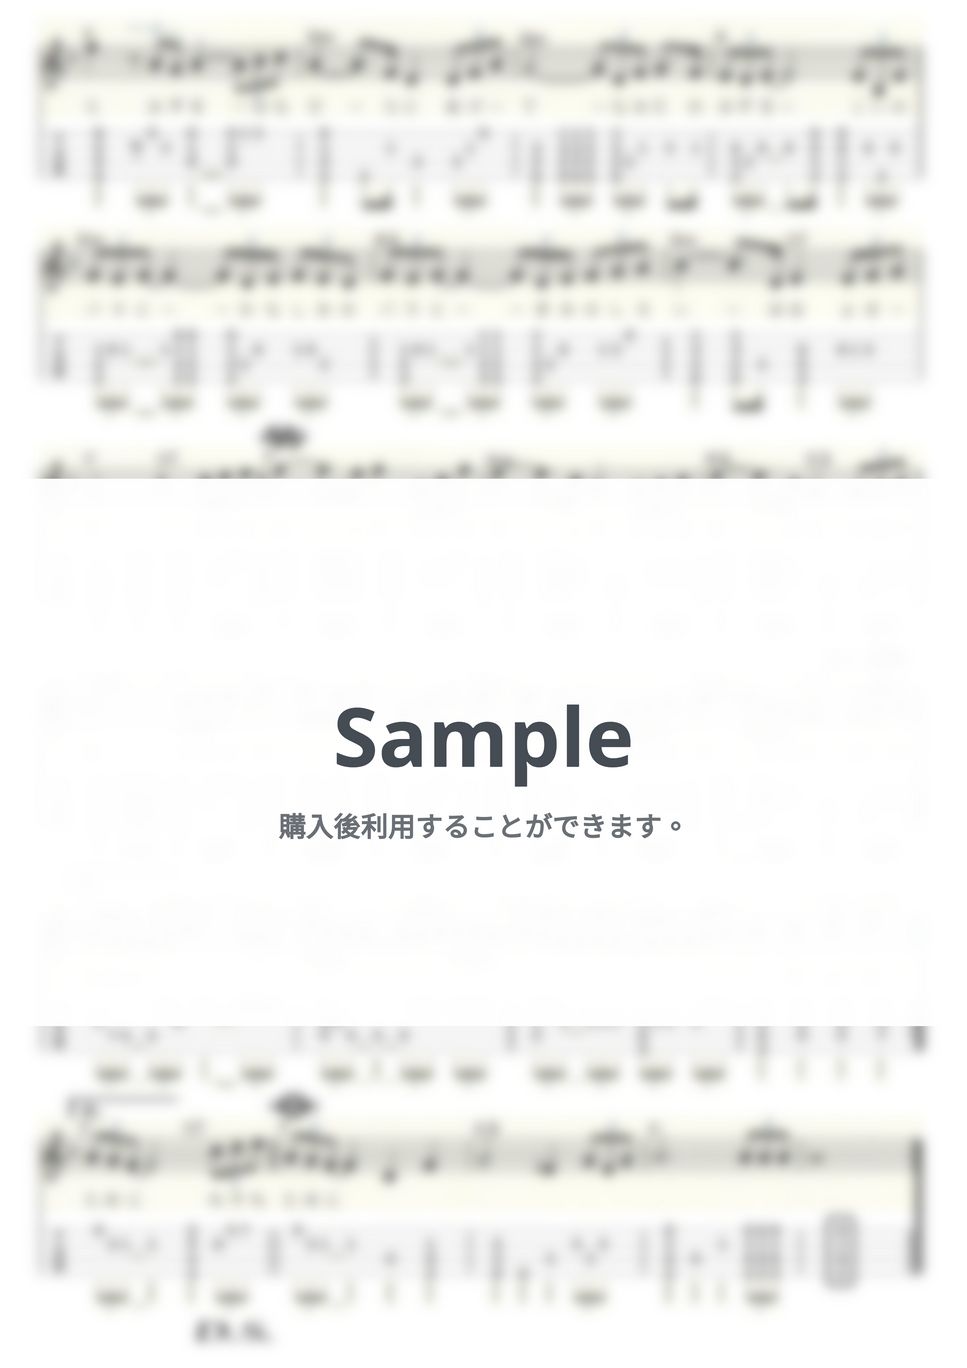 津川 晃 - 五月のバラ (ｳｸﾚﾚｿﾛ/Low-G/中級) by ukulelepapa